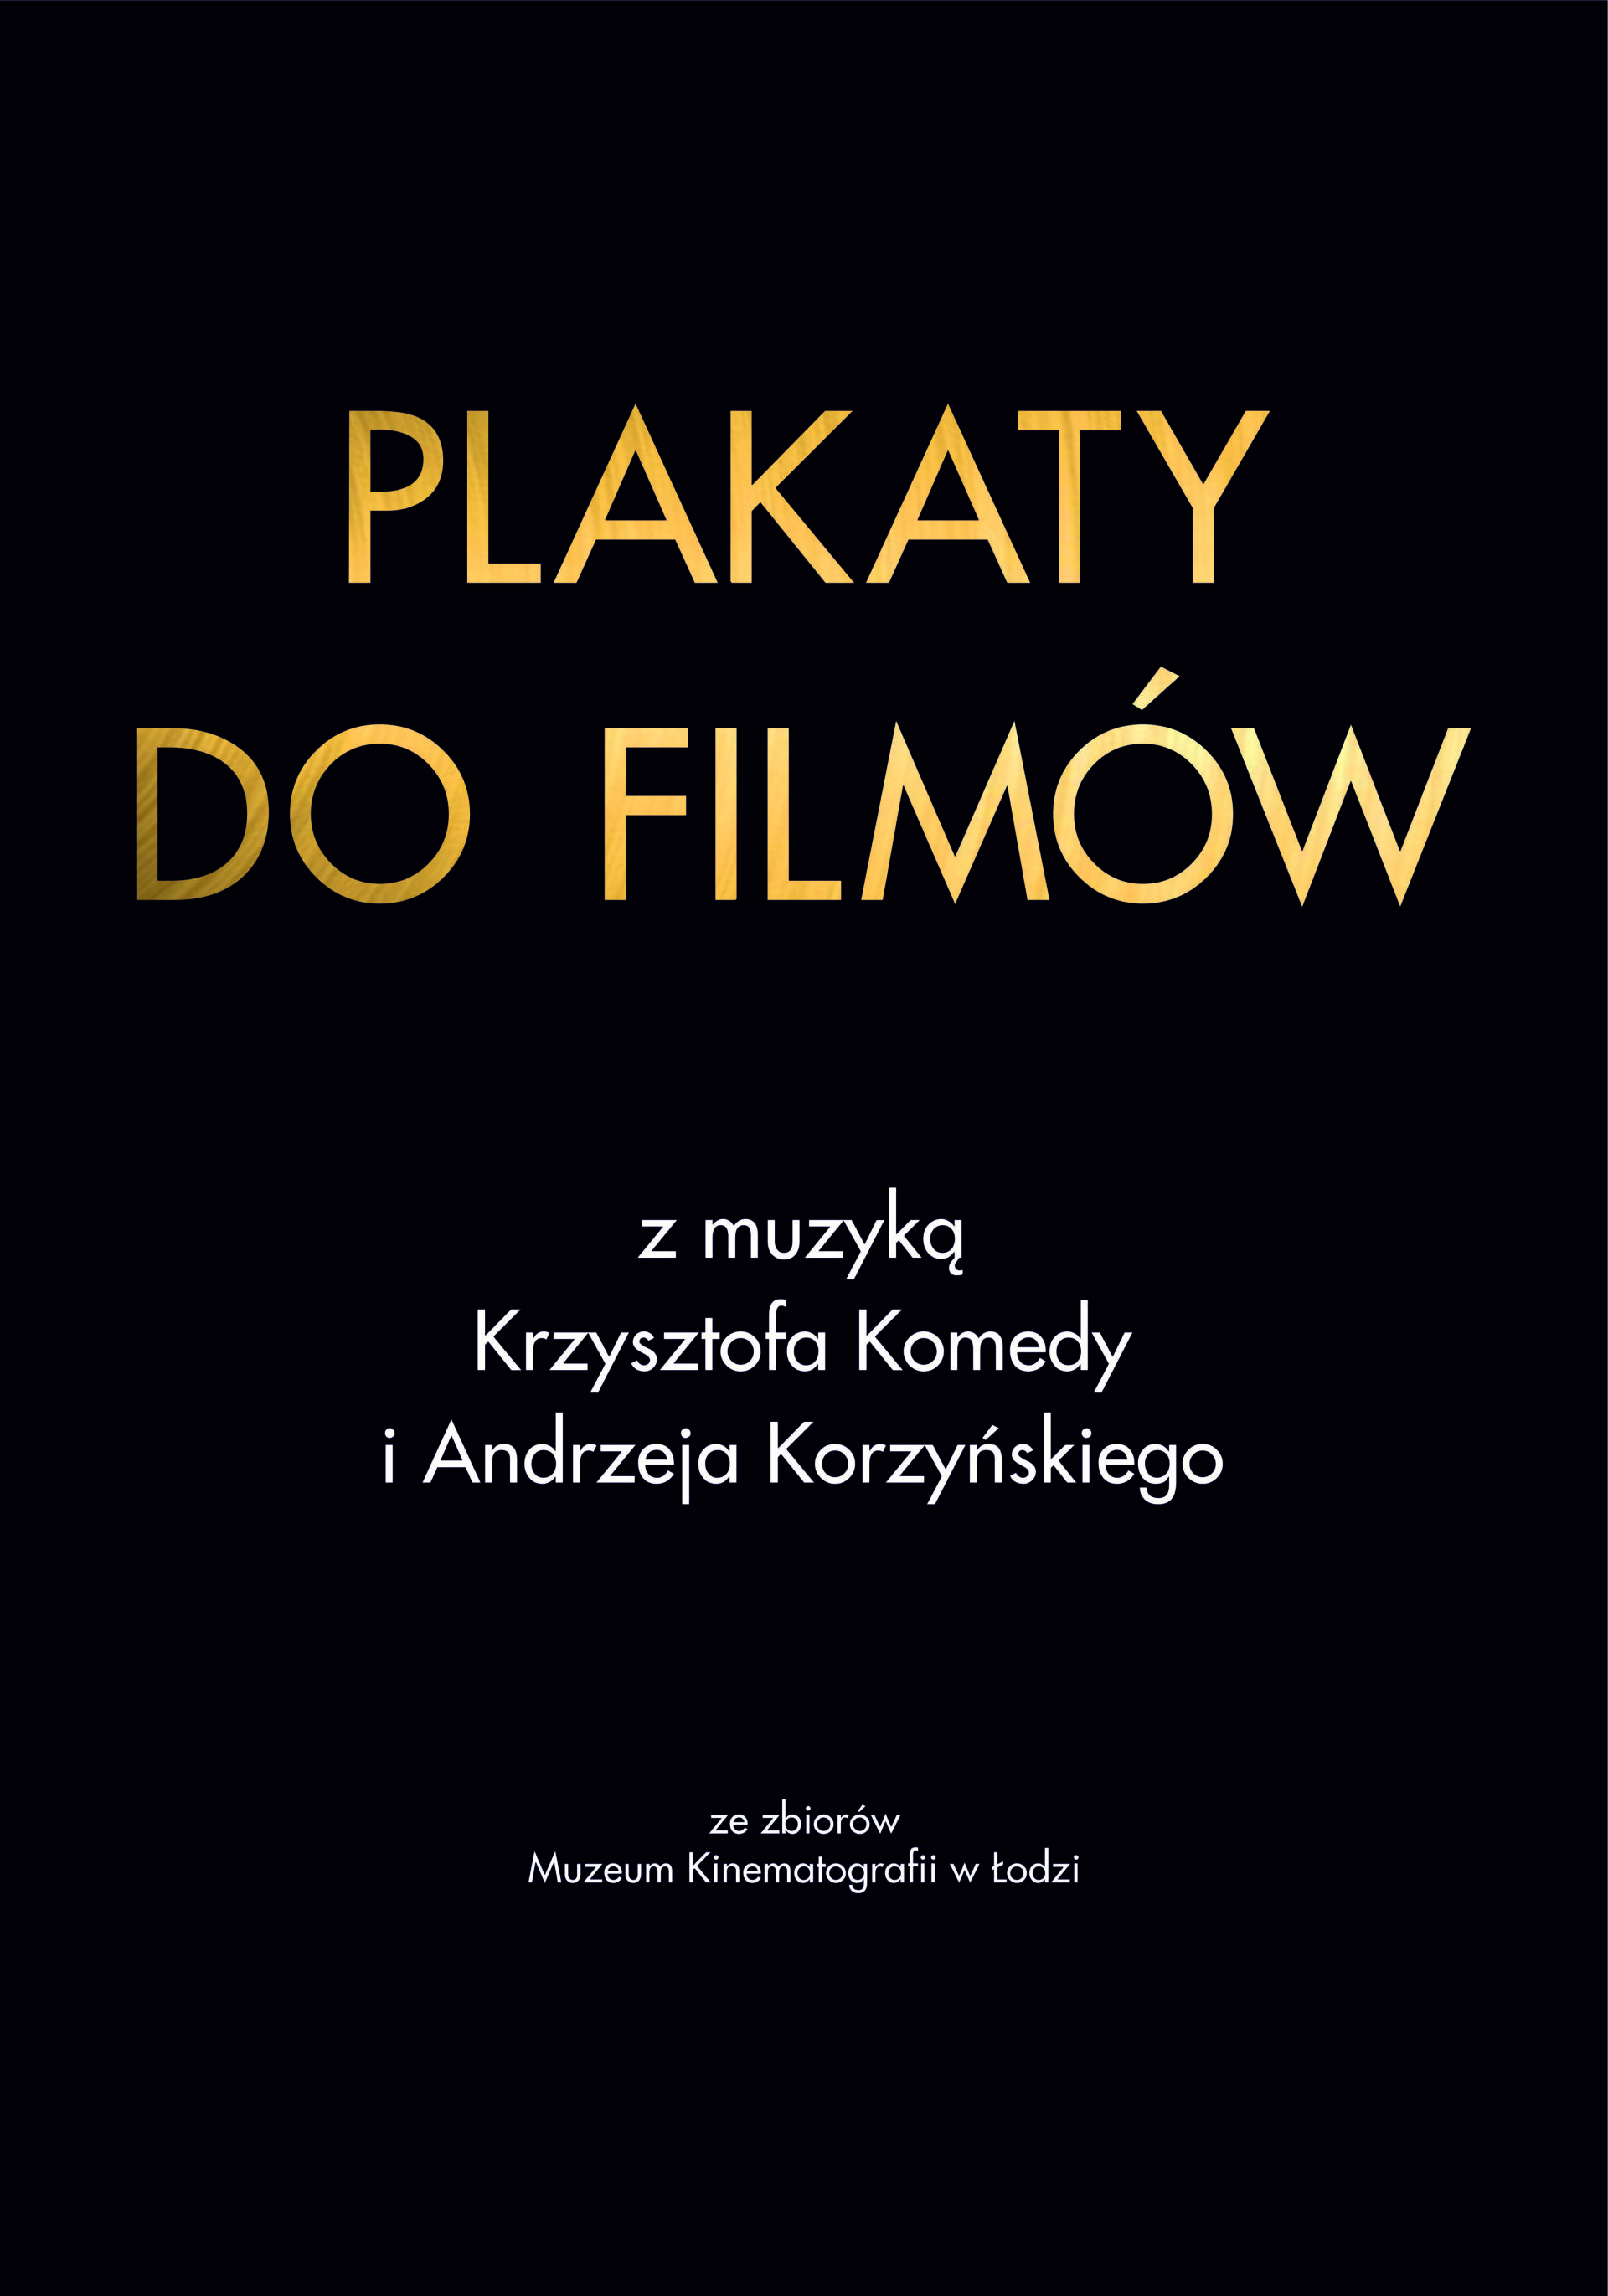 Plakaty do filmów z muzyką Krzysztofa Komedy i Andrzeja Korzyńskiego